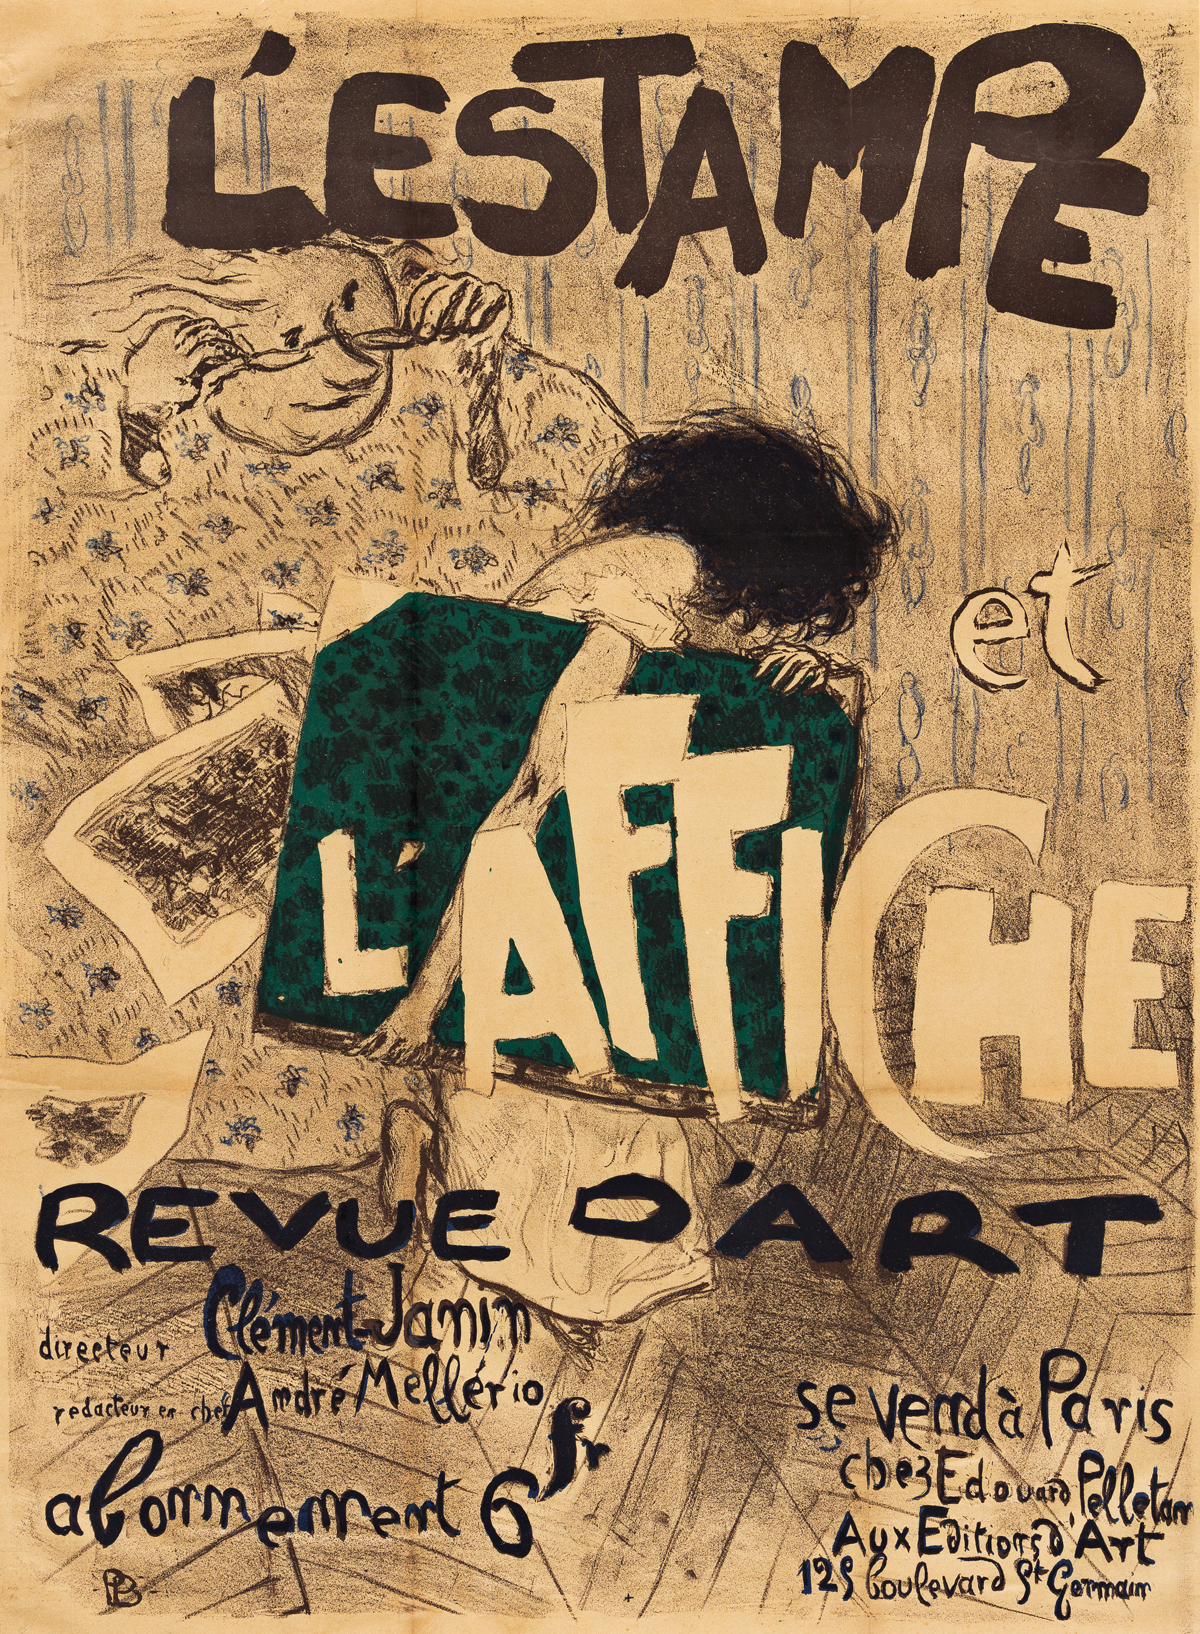 PIERRE BONNARD (1867-1947).  LESTAMPE ET LAFFICHE / REVUE DART. 1897. 32x23 inches, 82x60 cm. Editions dArt, Paris.